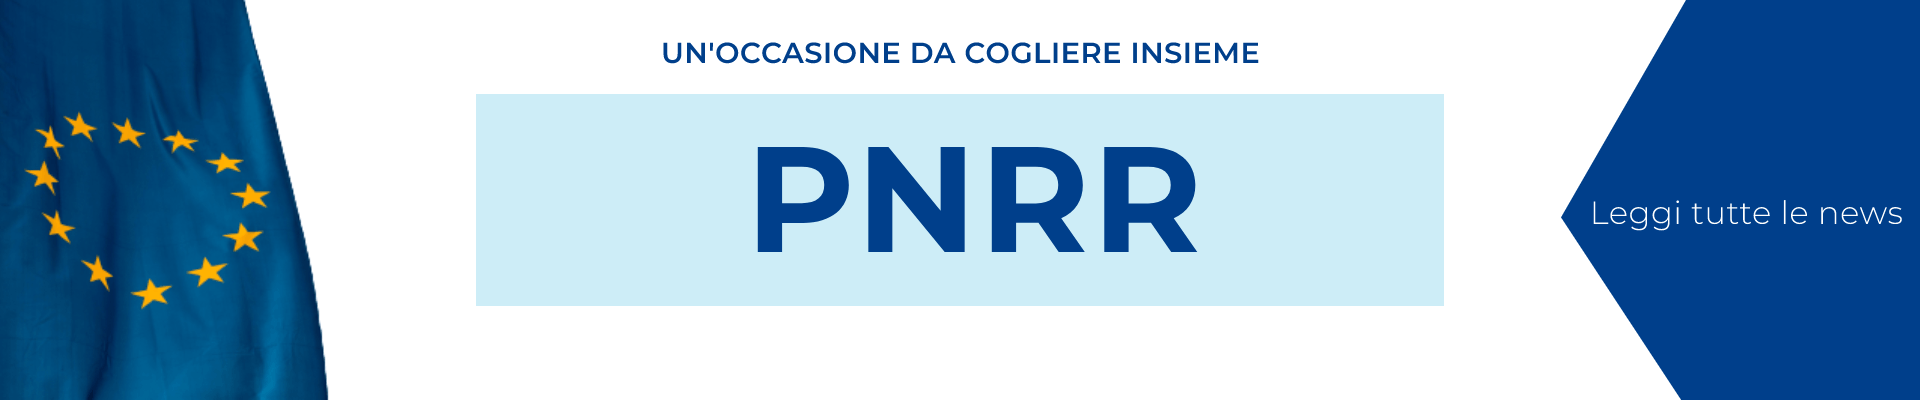 PNRR (1) (1)